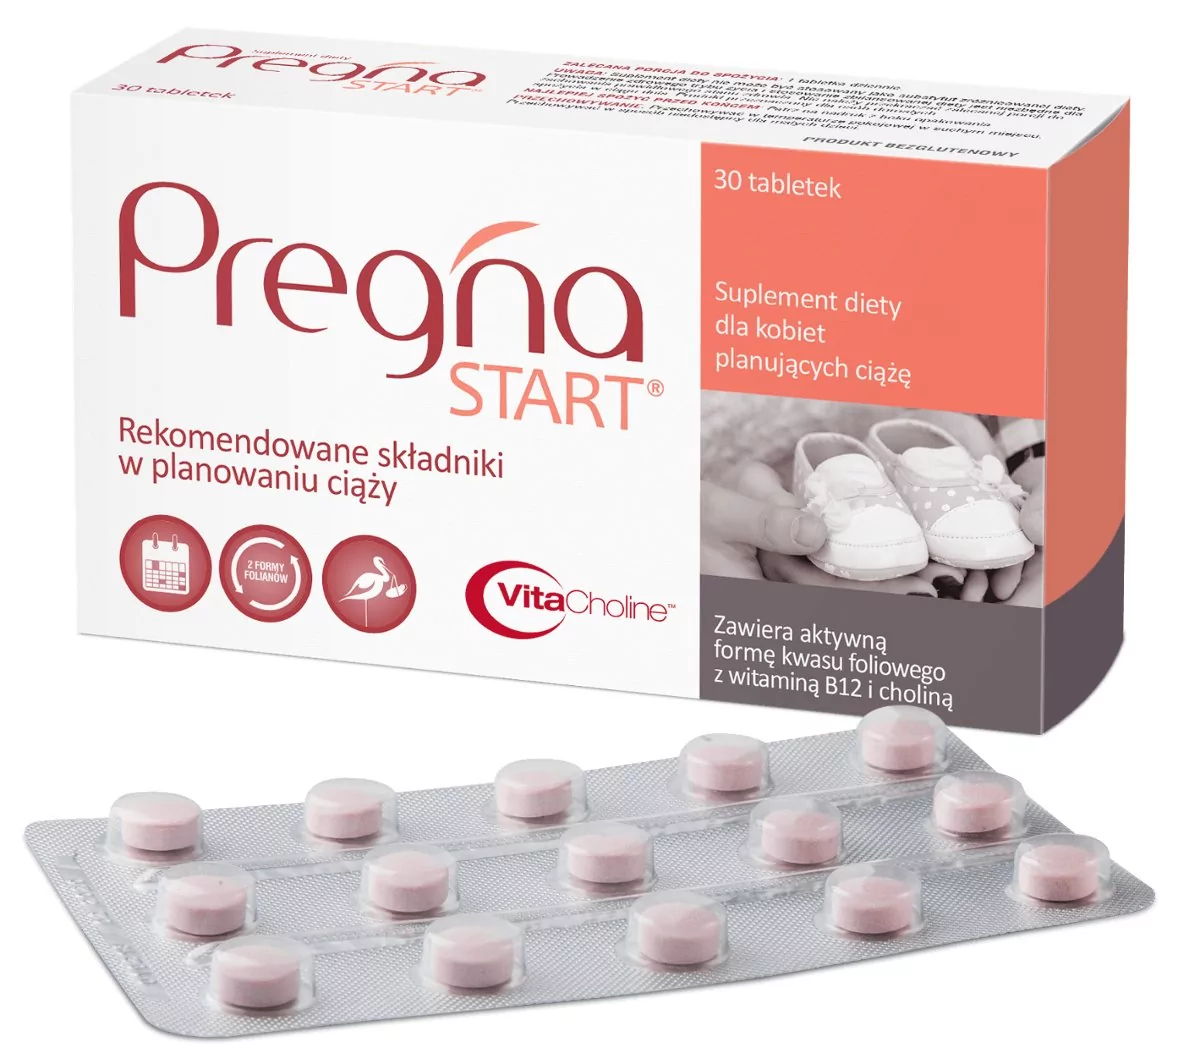 Zestaw 3 x Pregna START suplement diety dla kobiet planujących ciążę, 30tabletek